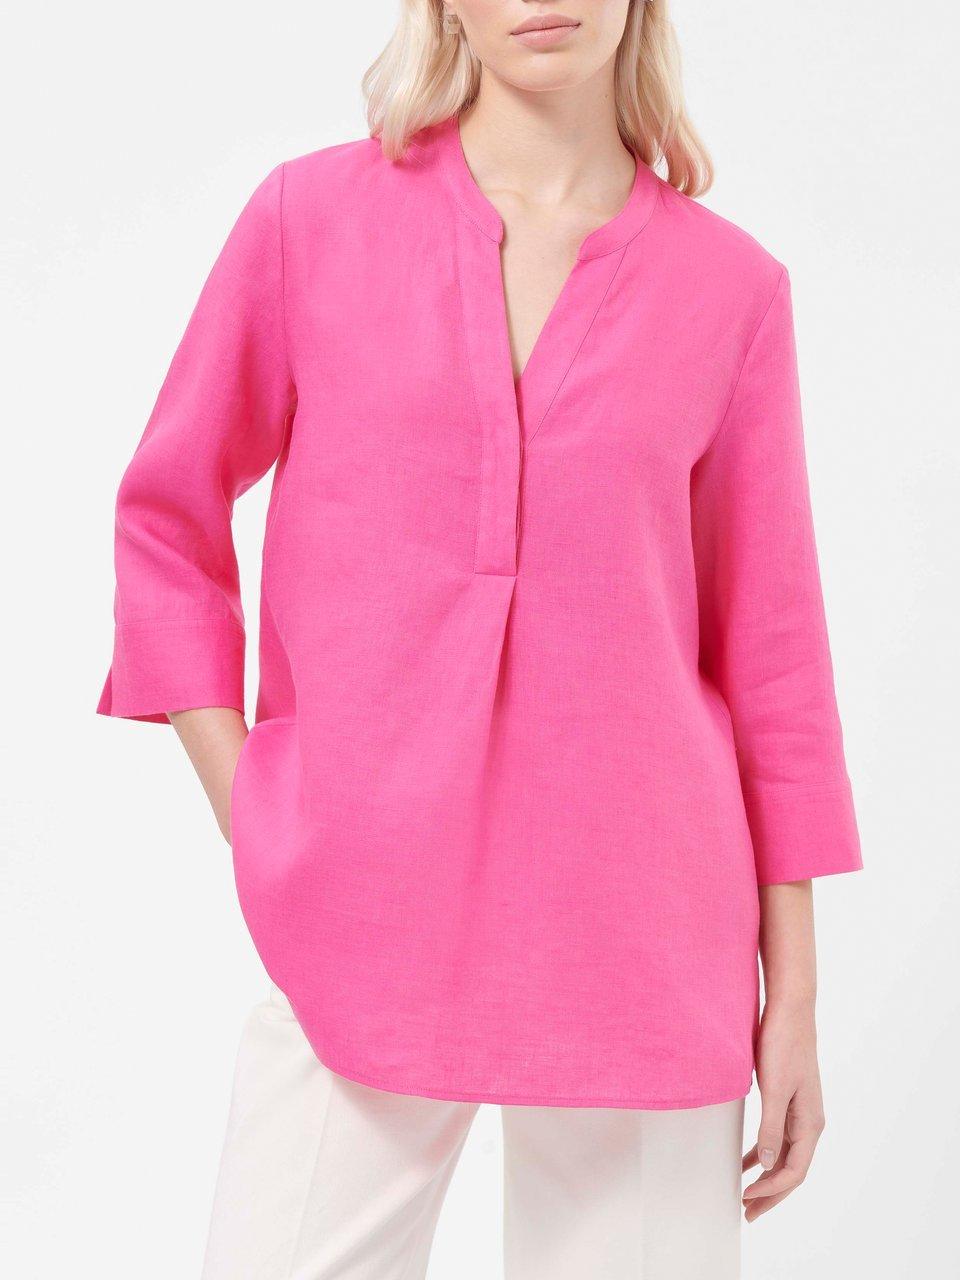 kaufen im Damen Peter Hahn Pinke Online-Shop Blusen